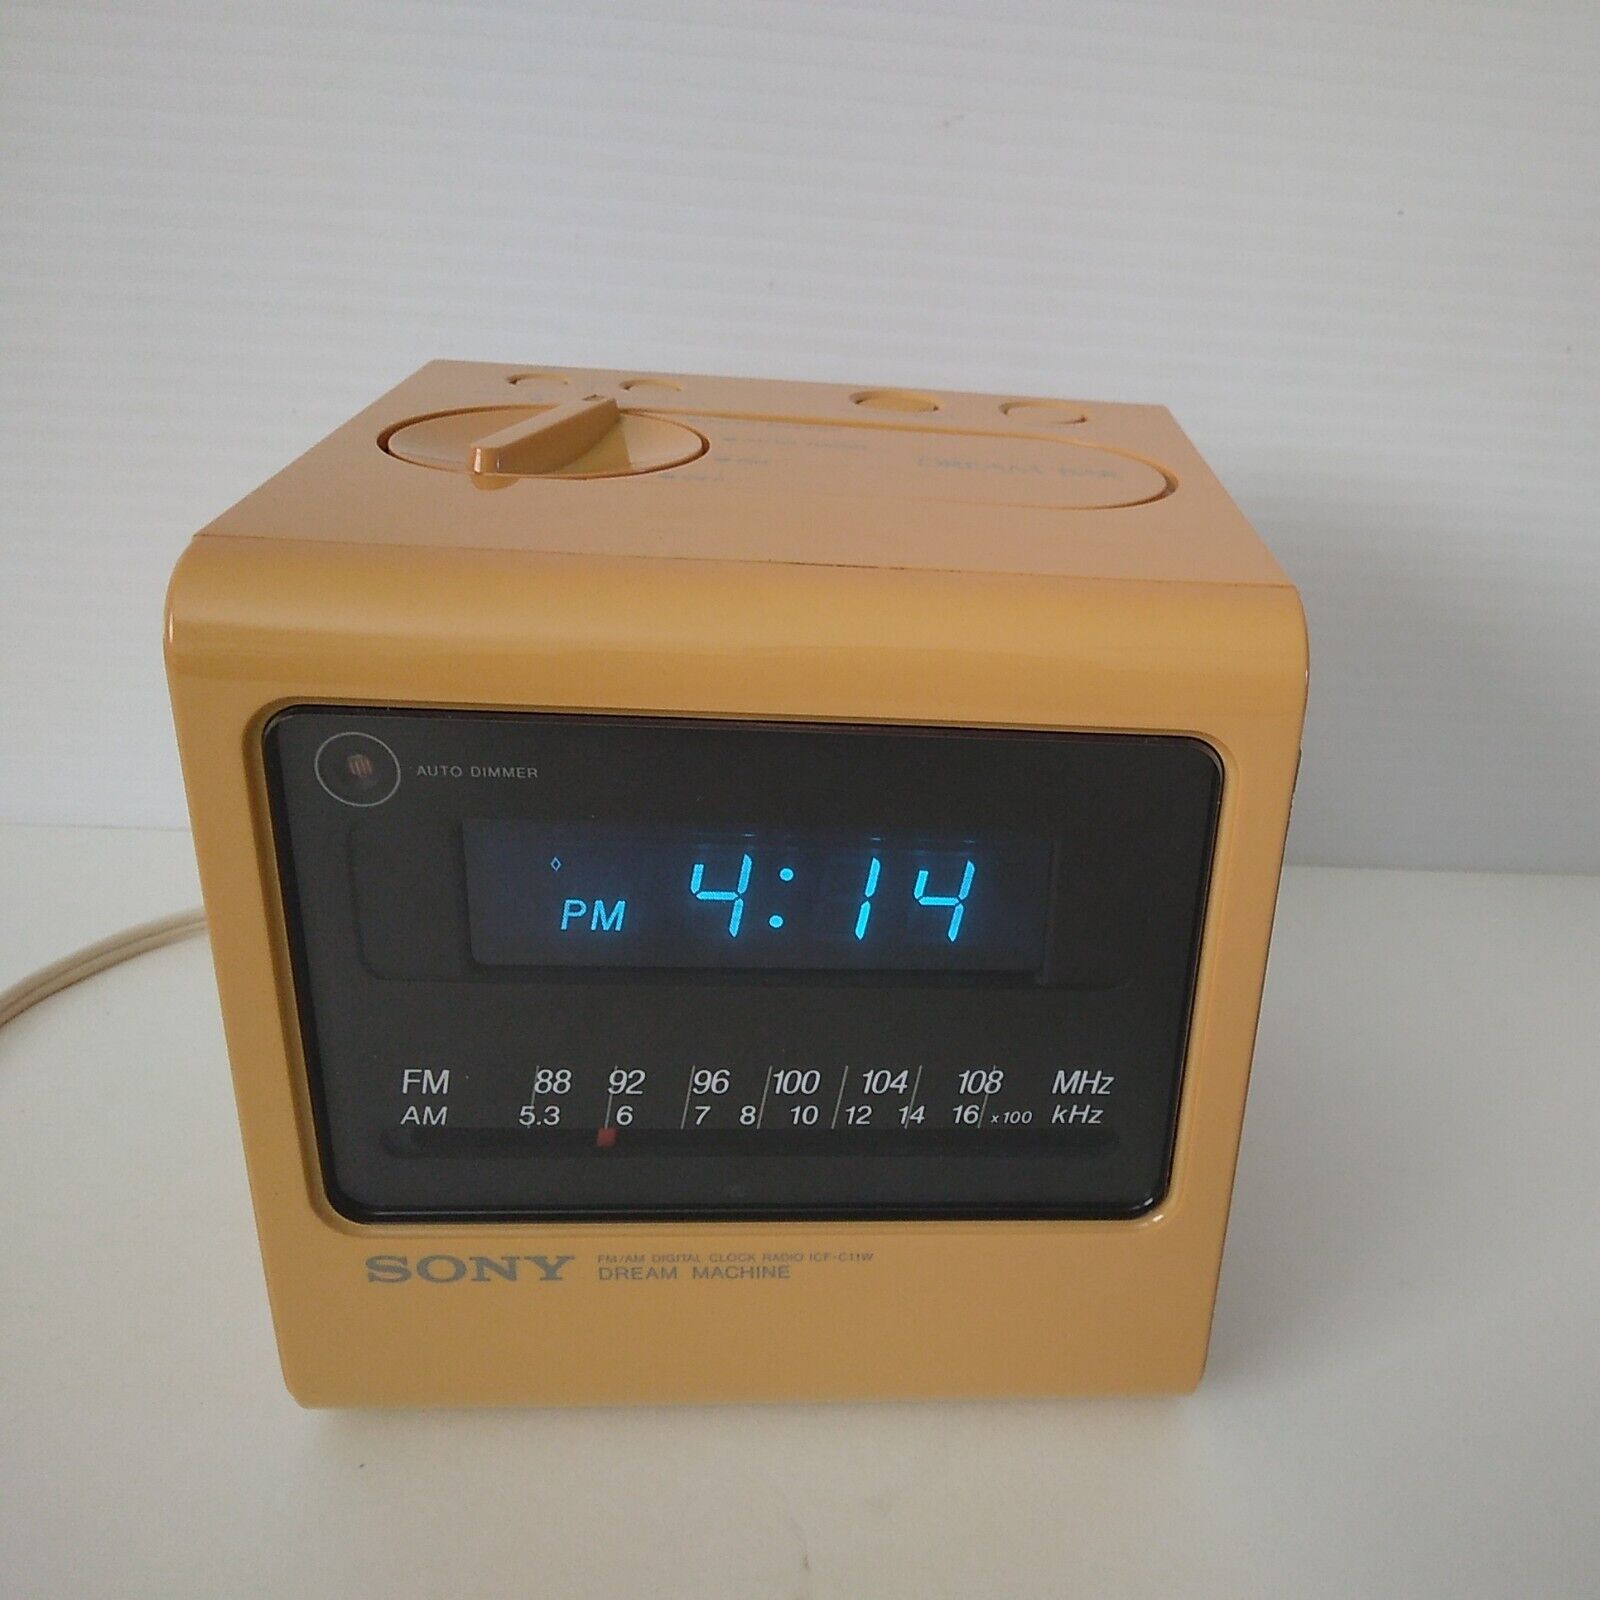 Sony Dream Machine ICF-C11W Alarm Clock-1978-AM FM-Orange-Corded-Parts/Repair